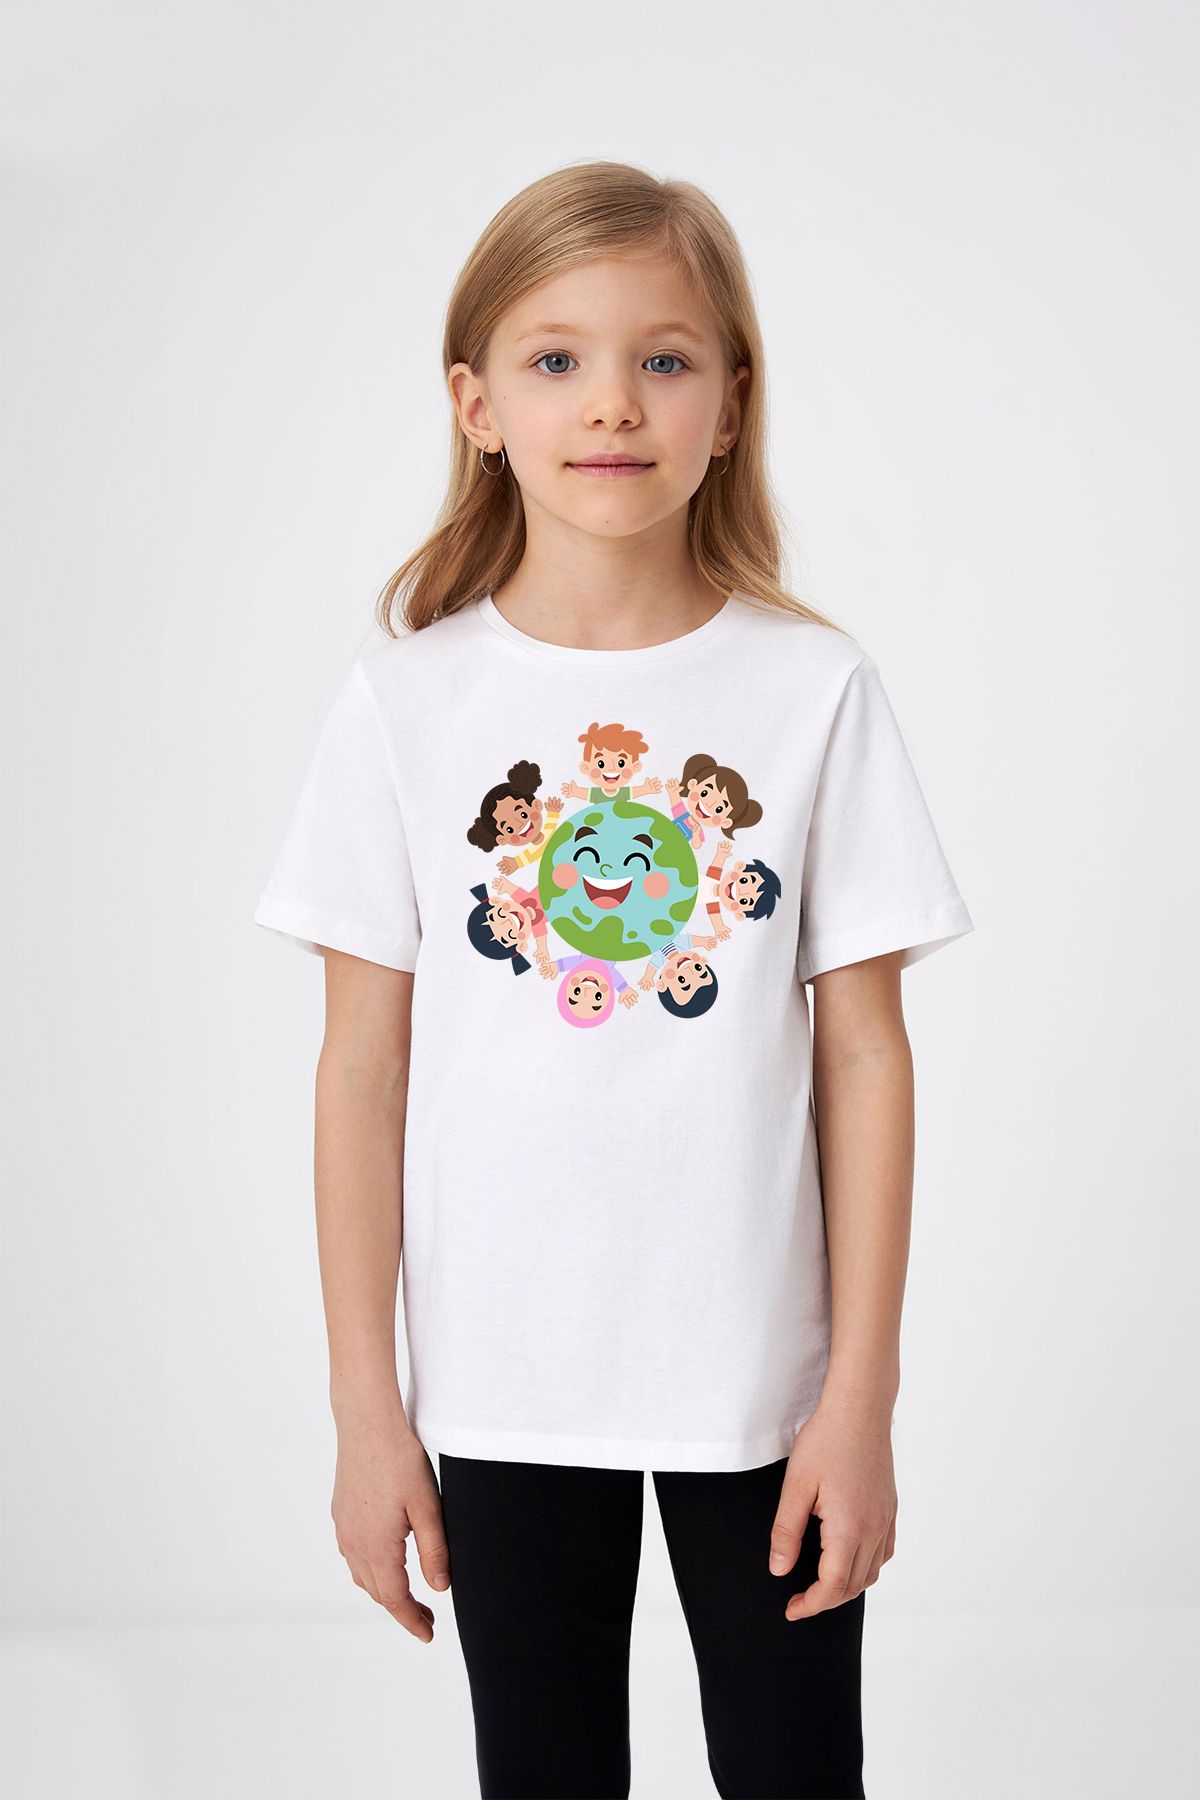 ADABEBEK El Ele Dünya Çocukları Desenli 23 Nisan Özel Baskılı Kız Çocuk Tişört